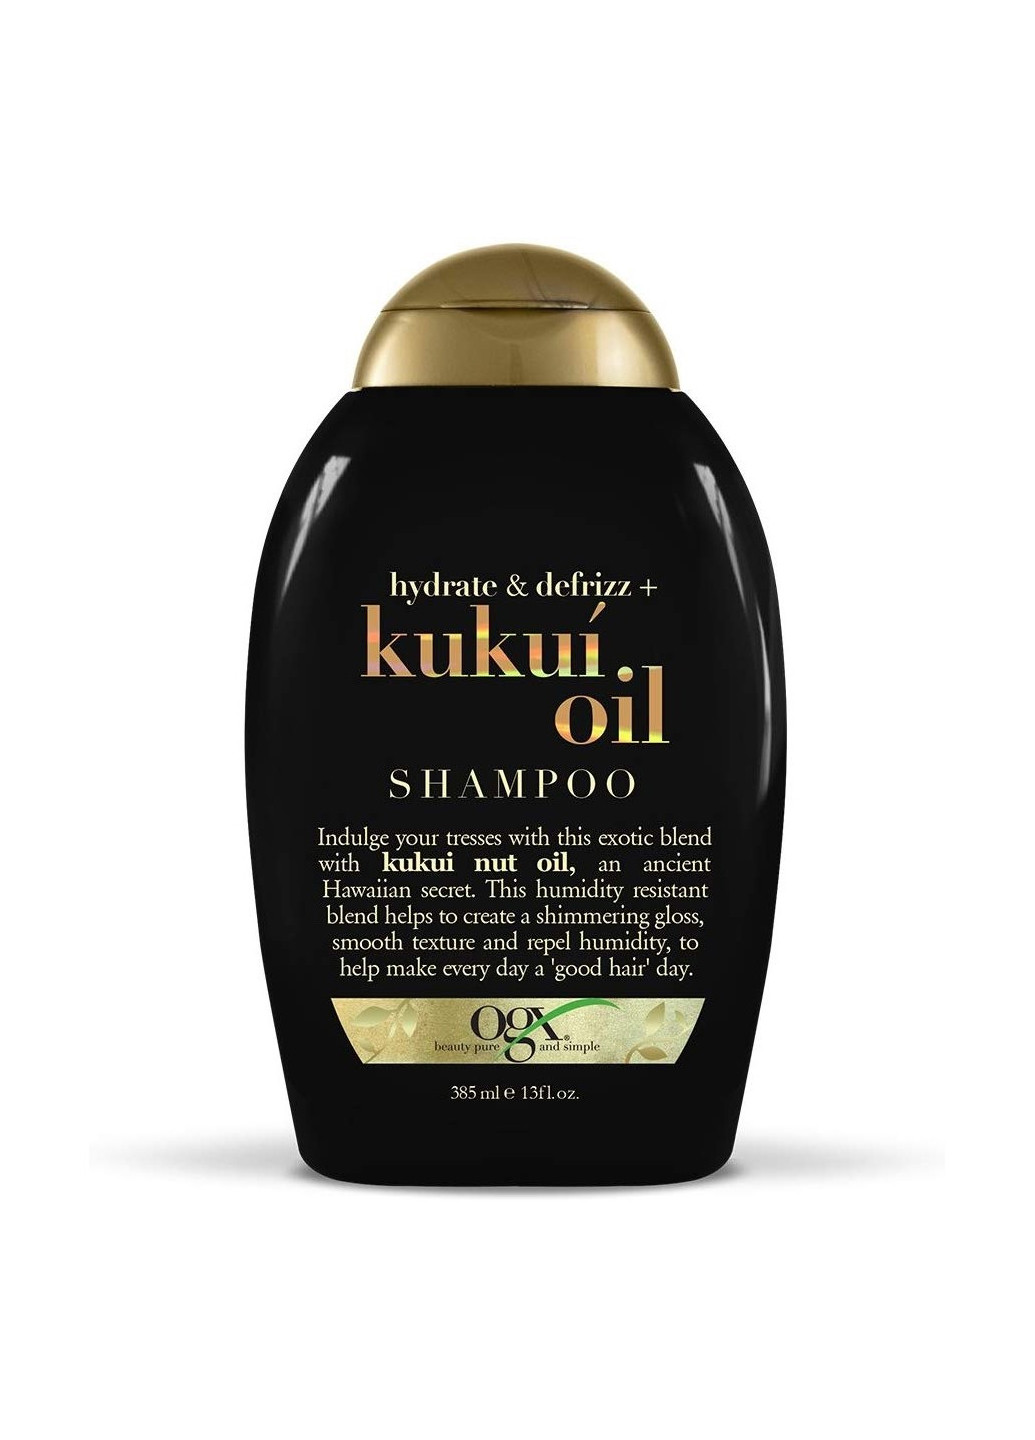 Шампунь для волос kukuí oil увлажнение и гладкость с маслом гавайского ореха (385мл) OGX 22796974211 (255846660)